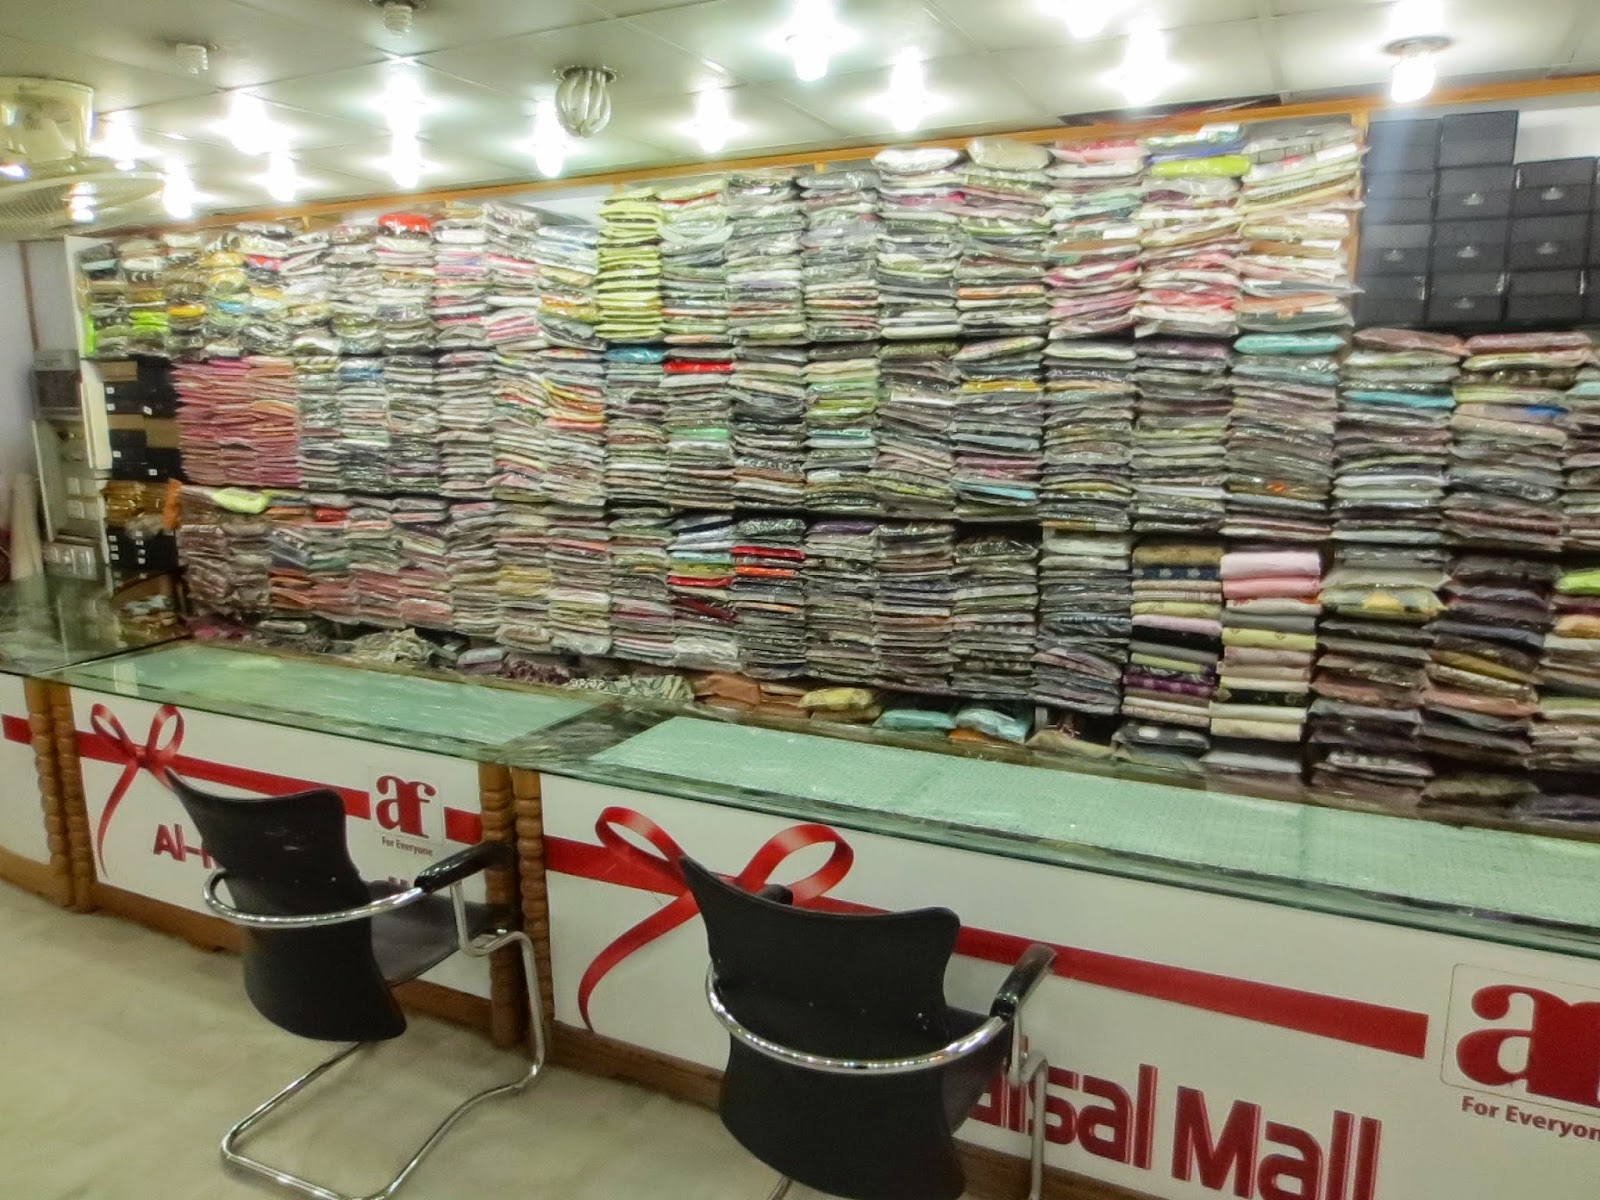 Alfaisal store